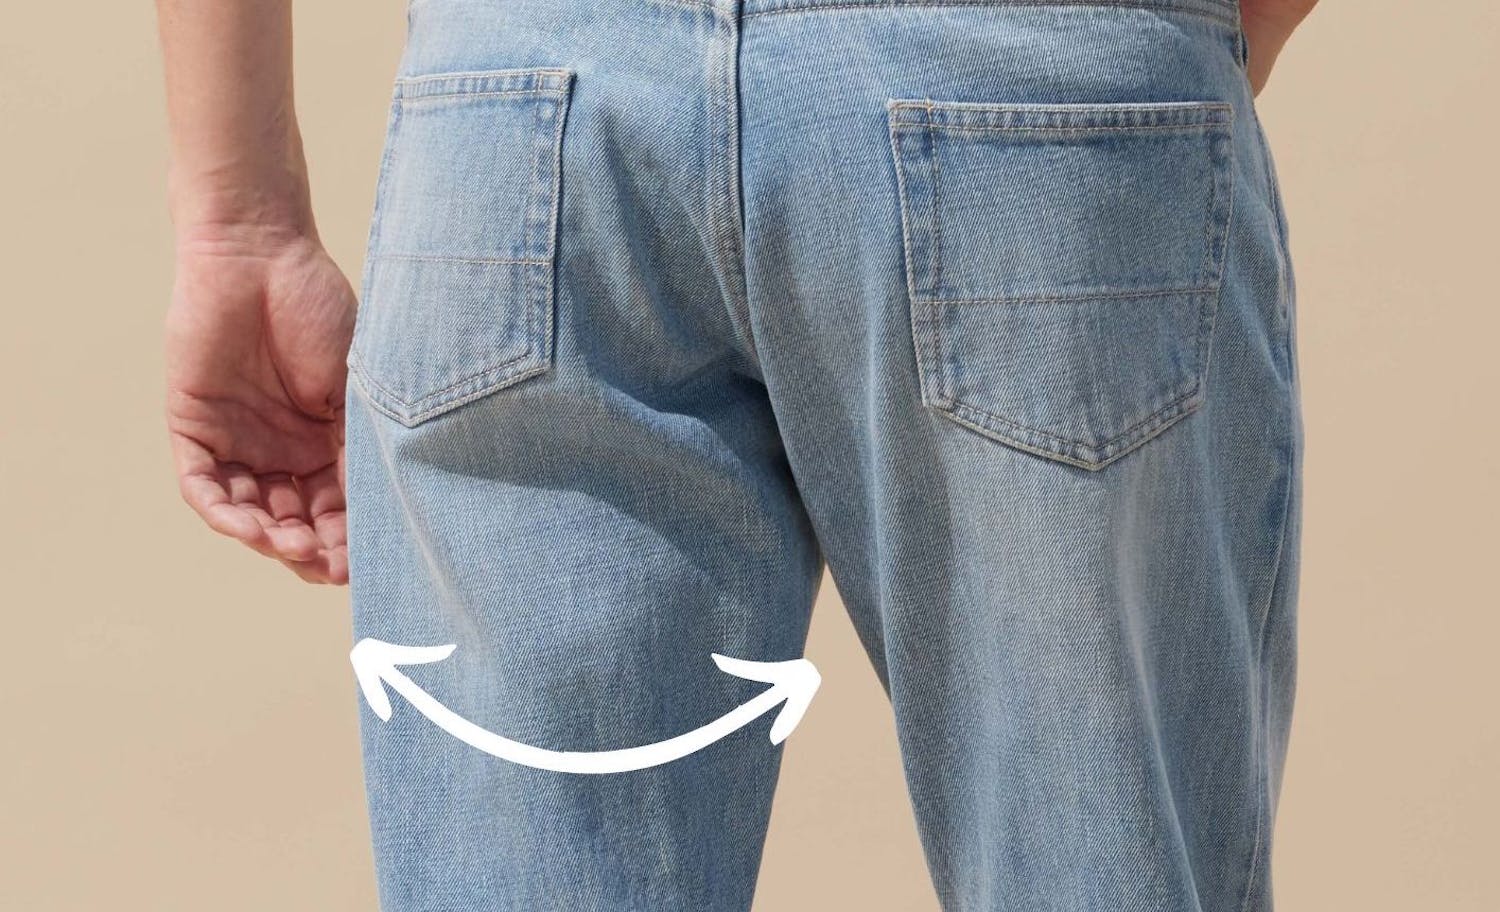 Comment agrandir un pantalon au niveau de la taille ?